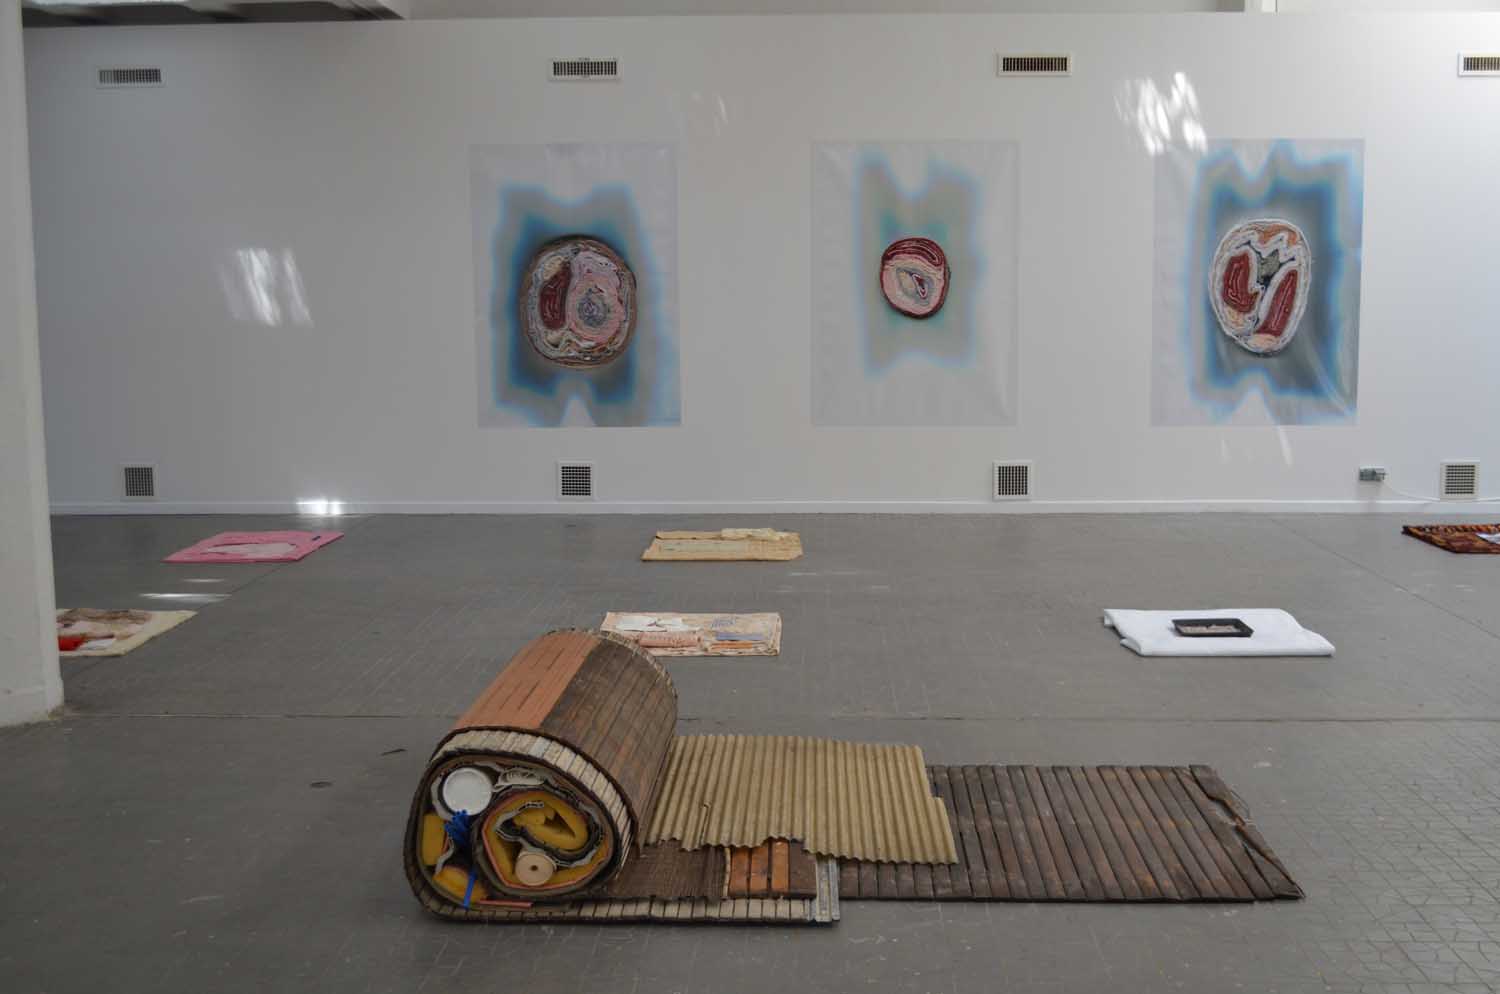 <em>Rouleau</em>, 2014-15  <br>mousse, tuyaux, tissus, papier peint et volets roulants en bois <br>160 x 130 x 60 cm